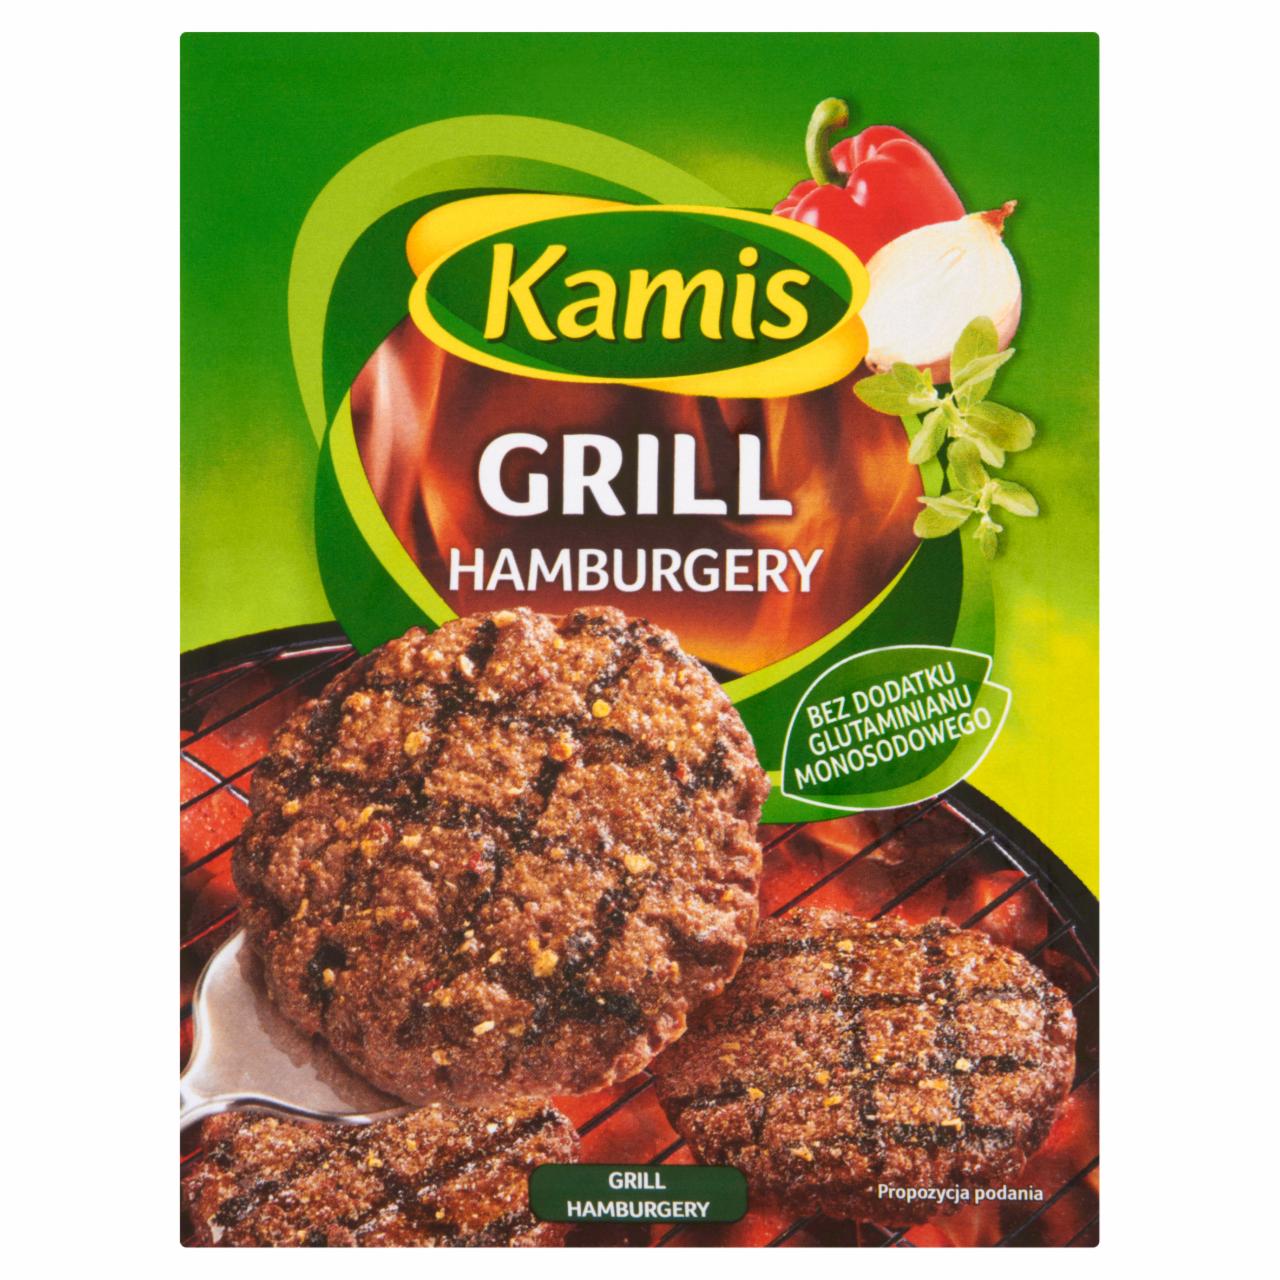 Zdjęcia - Kamis Grill Hamburgery Mieszanka przyprawowa 20 g